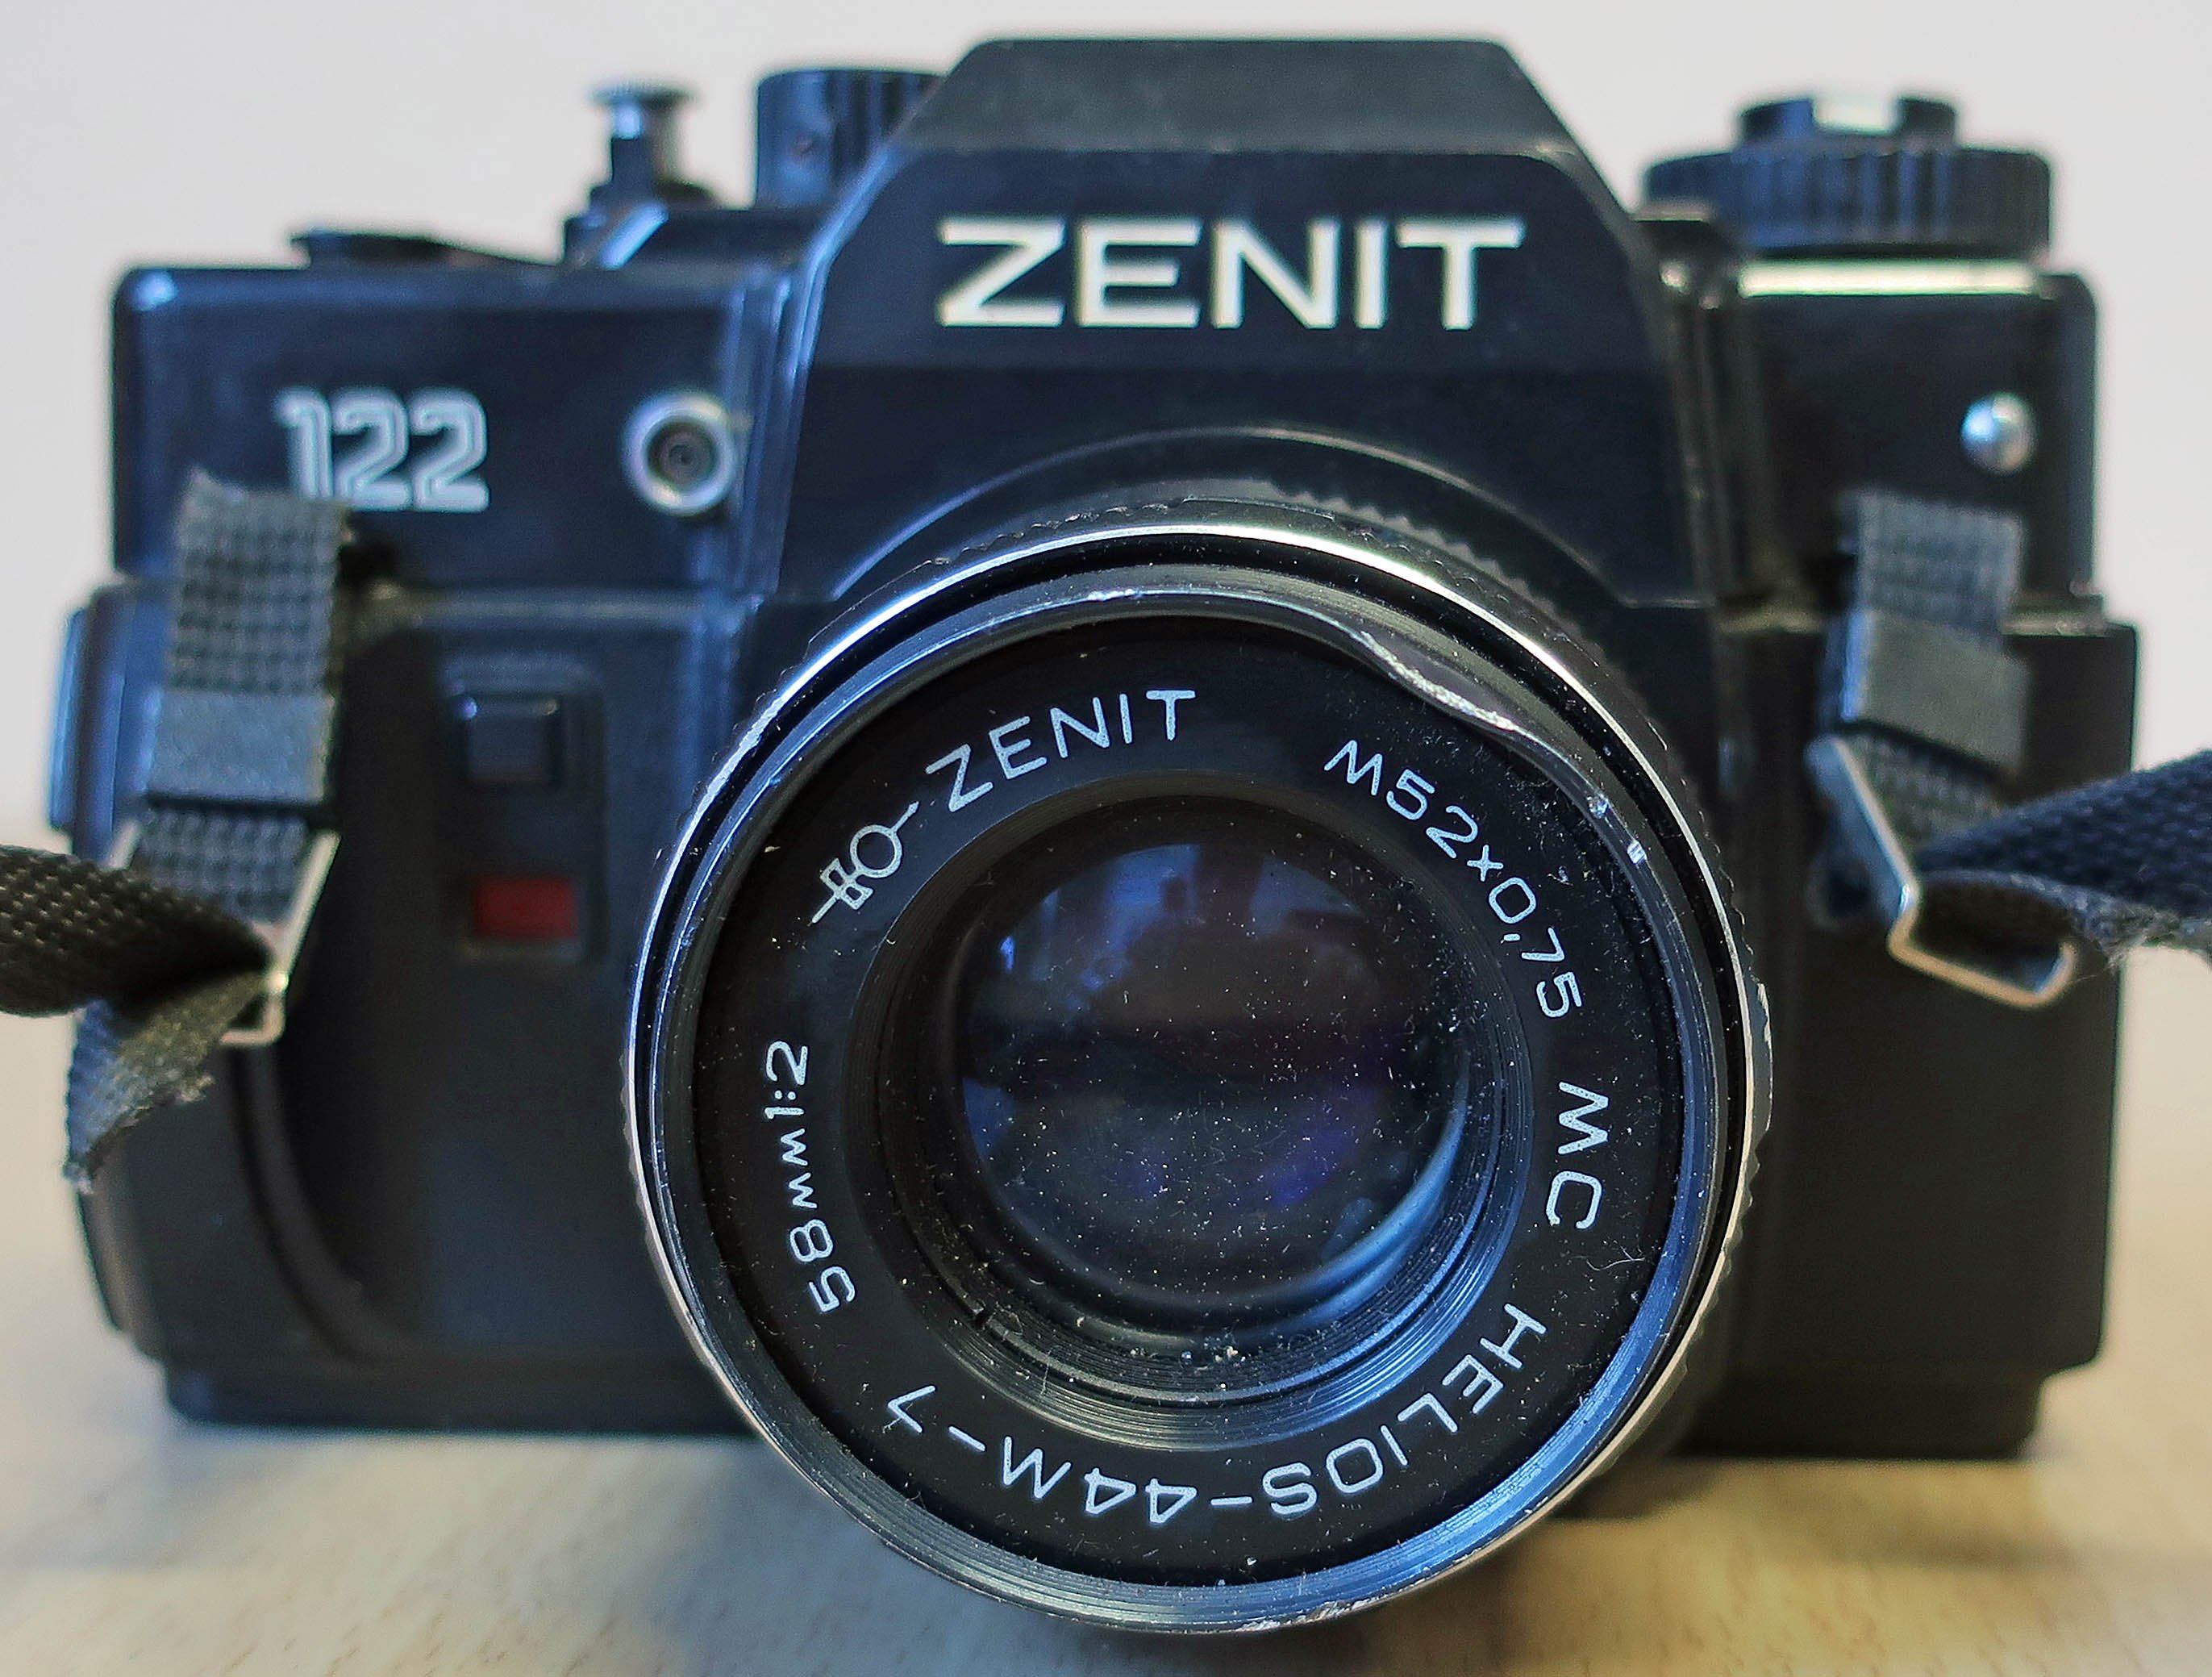 nalogkamera	Spiegelreflexkamera Zenit 122 (museum comp:ex CC BY-NC-SA)